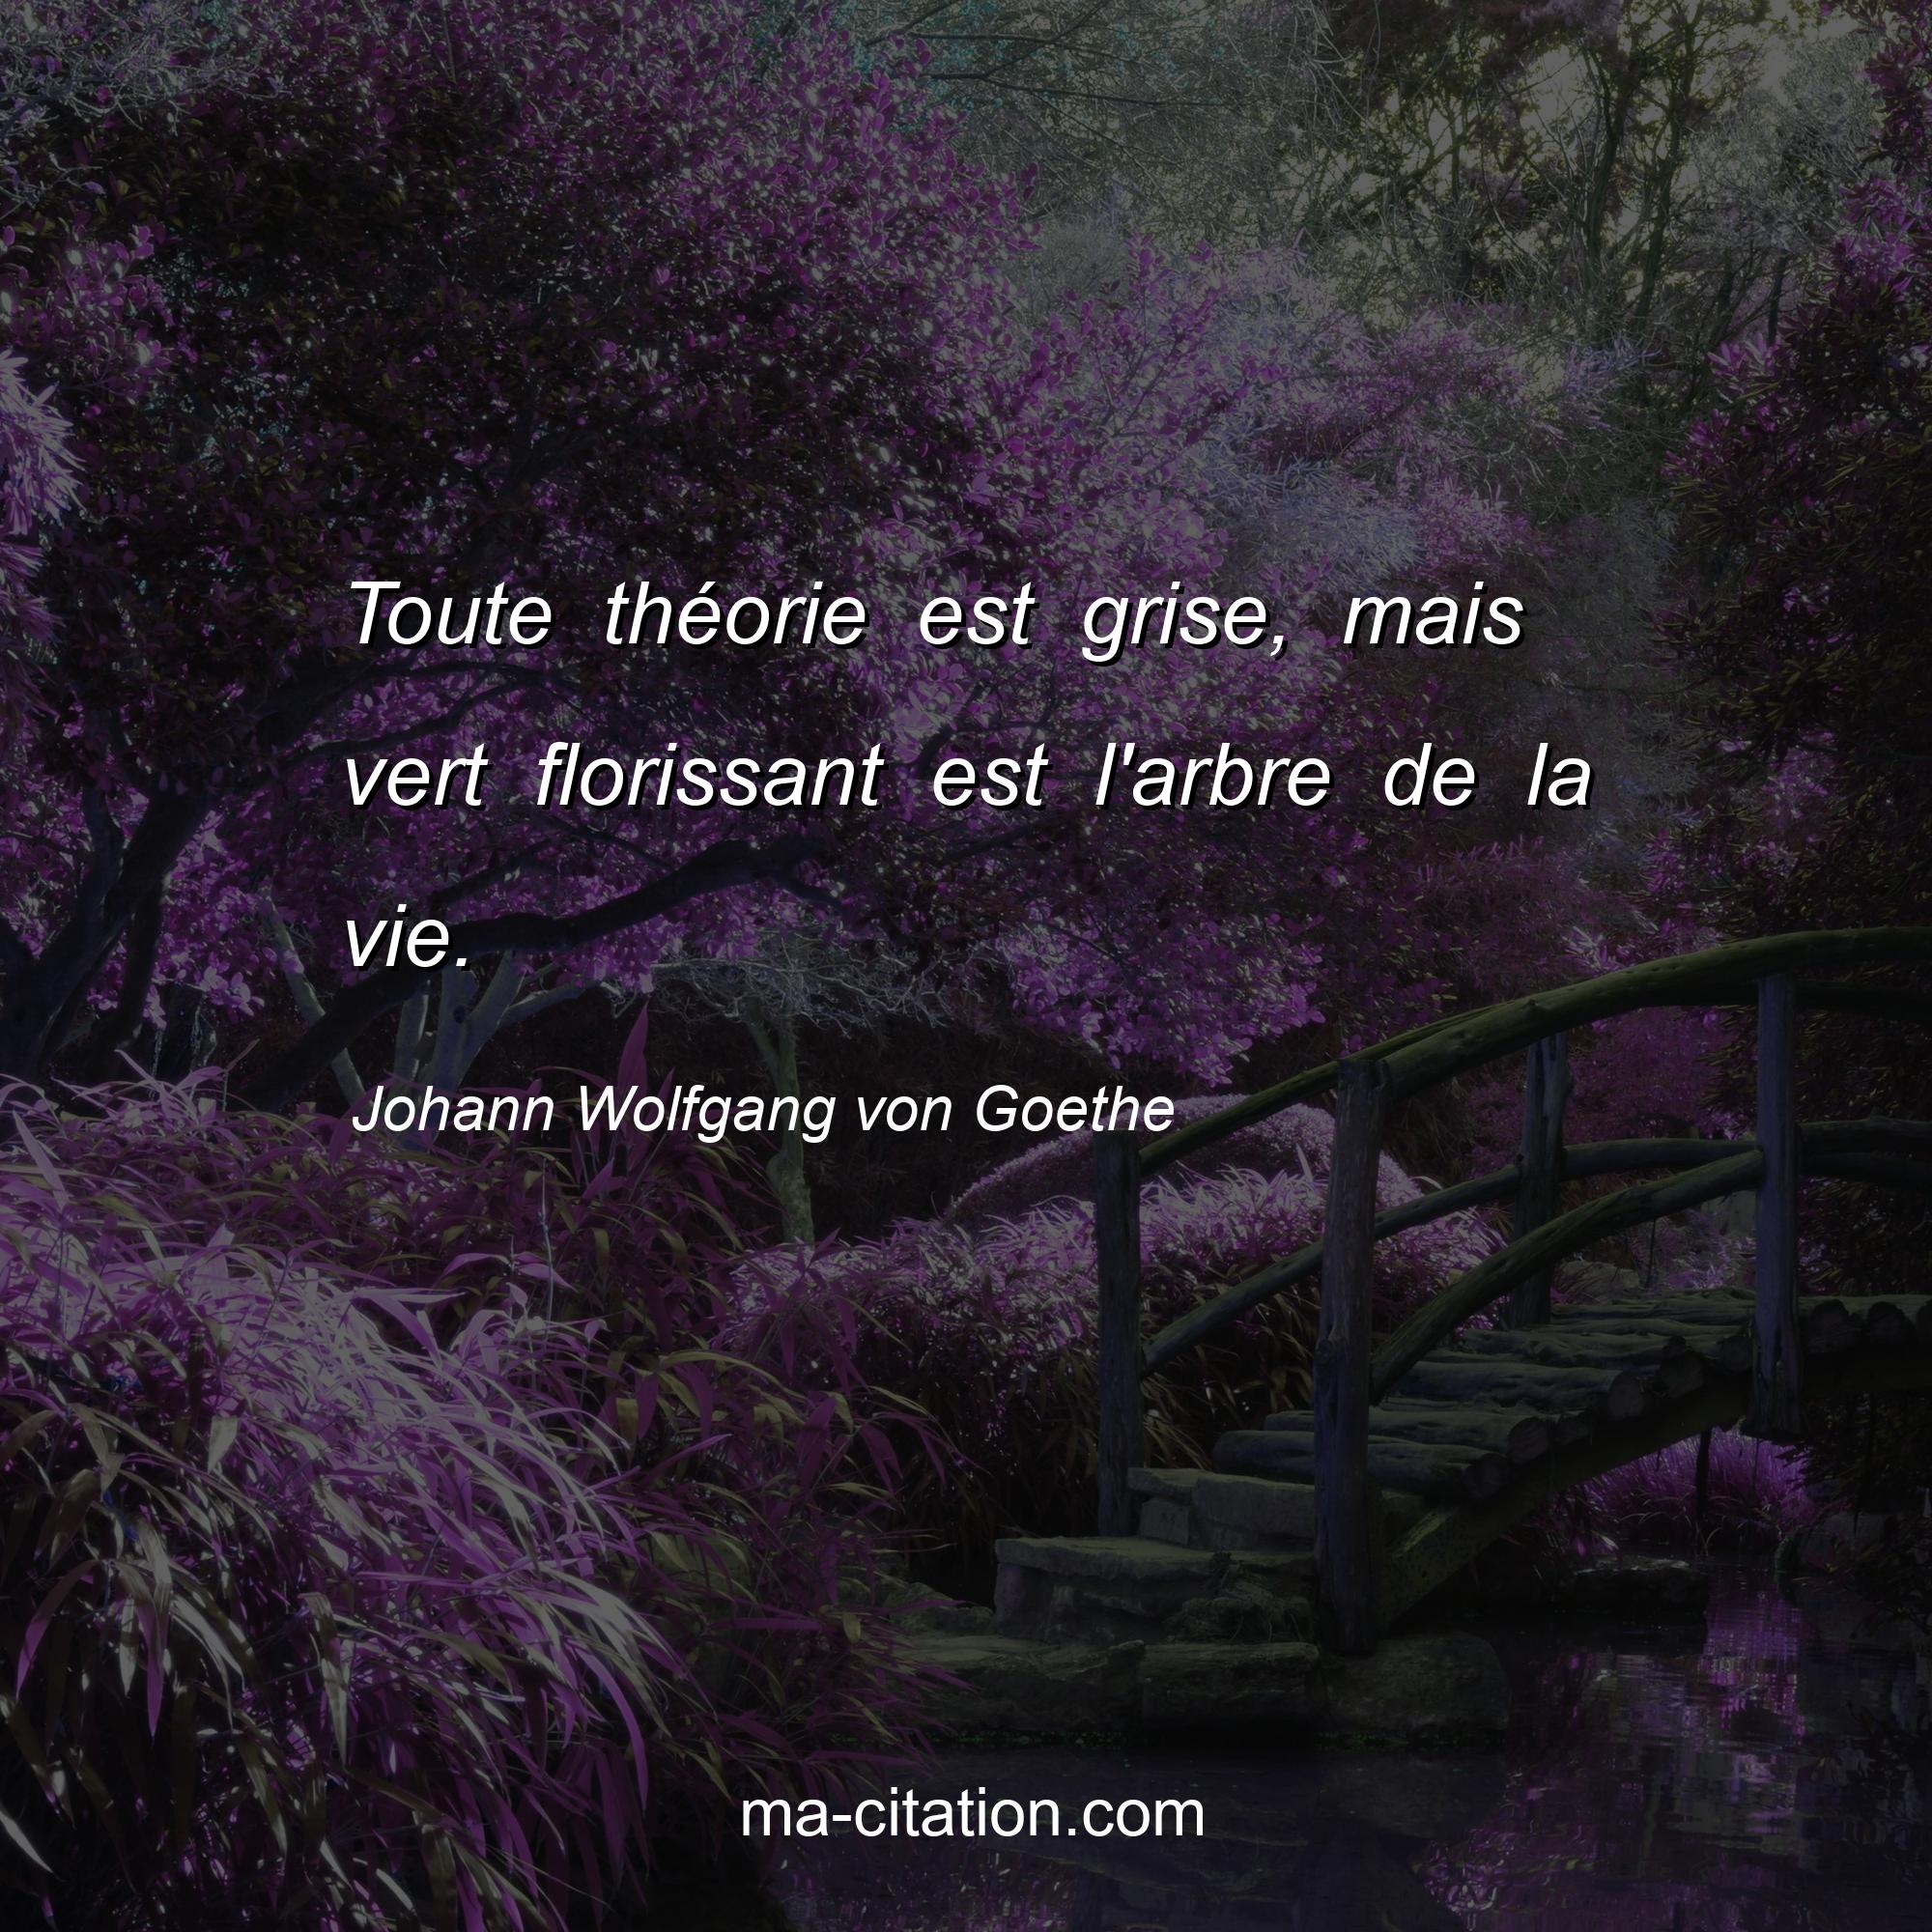 Johann Wolfgang von Goethe : Toute théorie est grise, mais vert florissant est l'arbre de la vie.